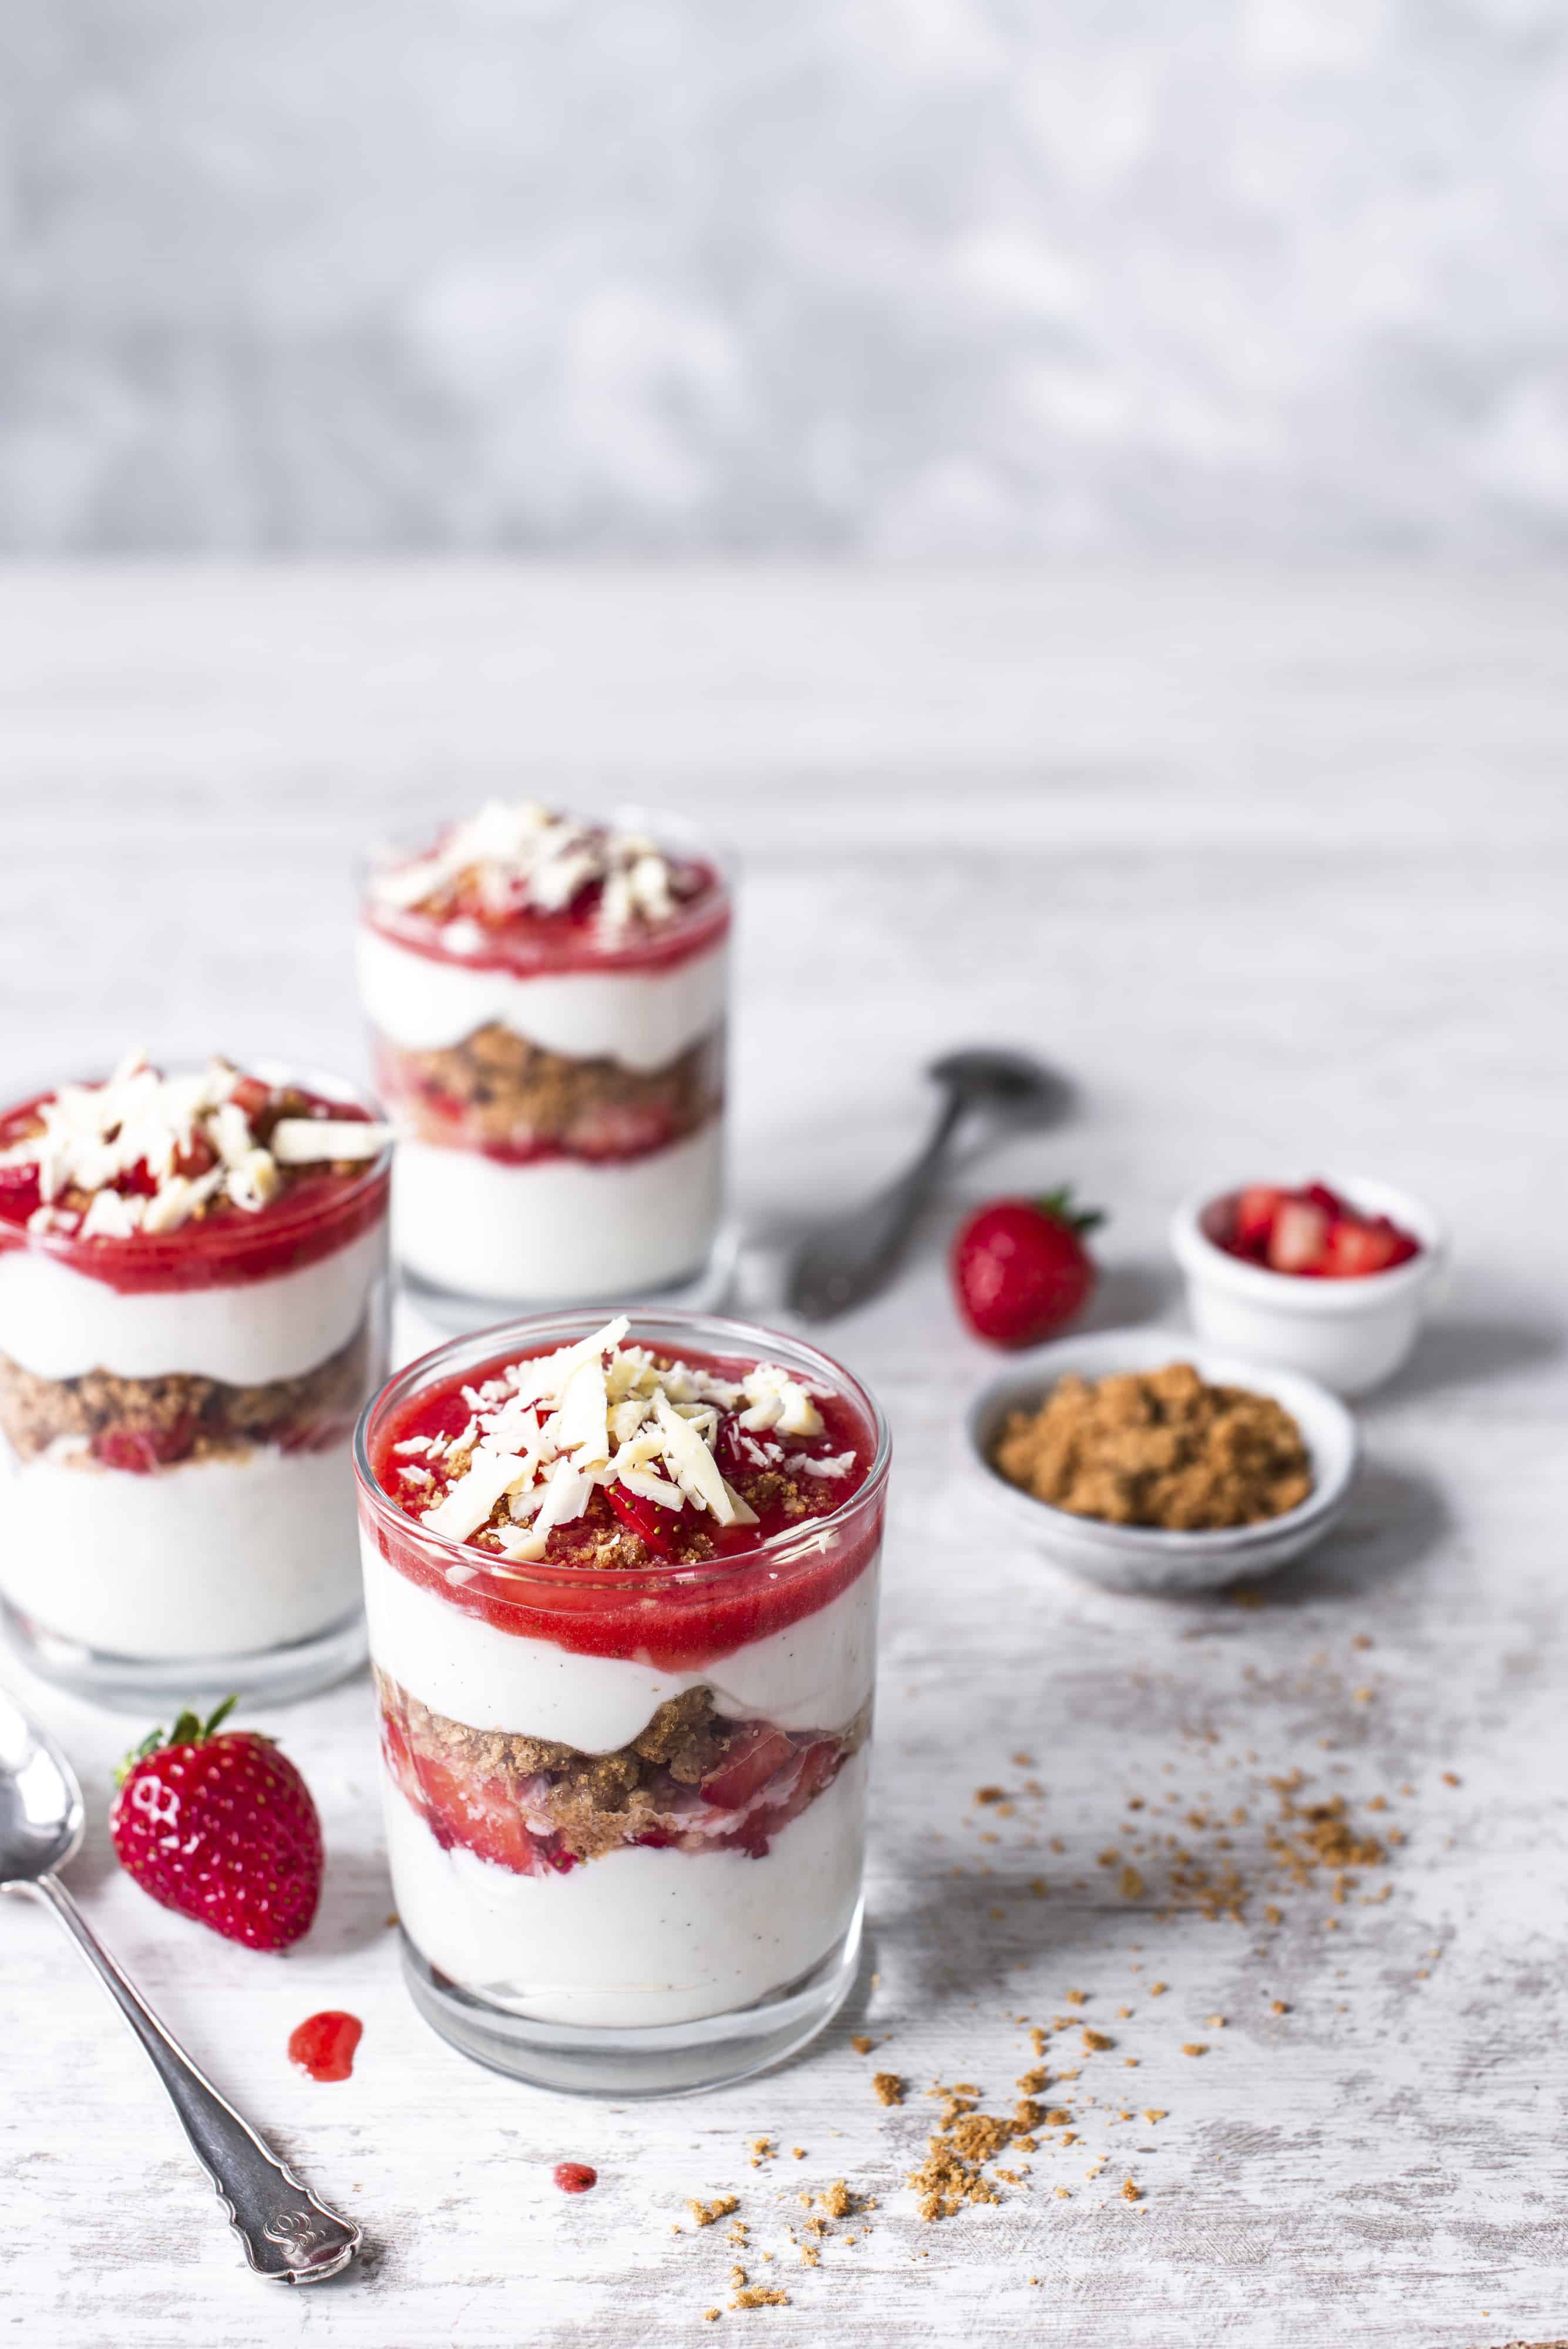 Erdbeer Sahne Dessert Im Glas - information online